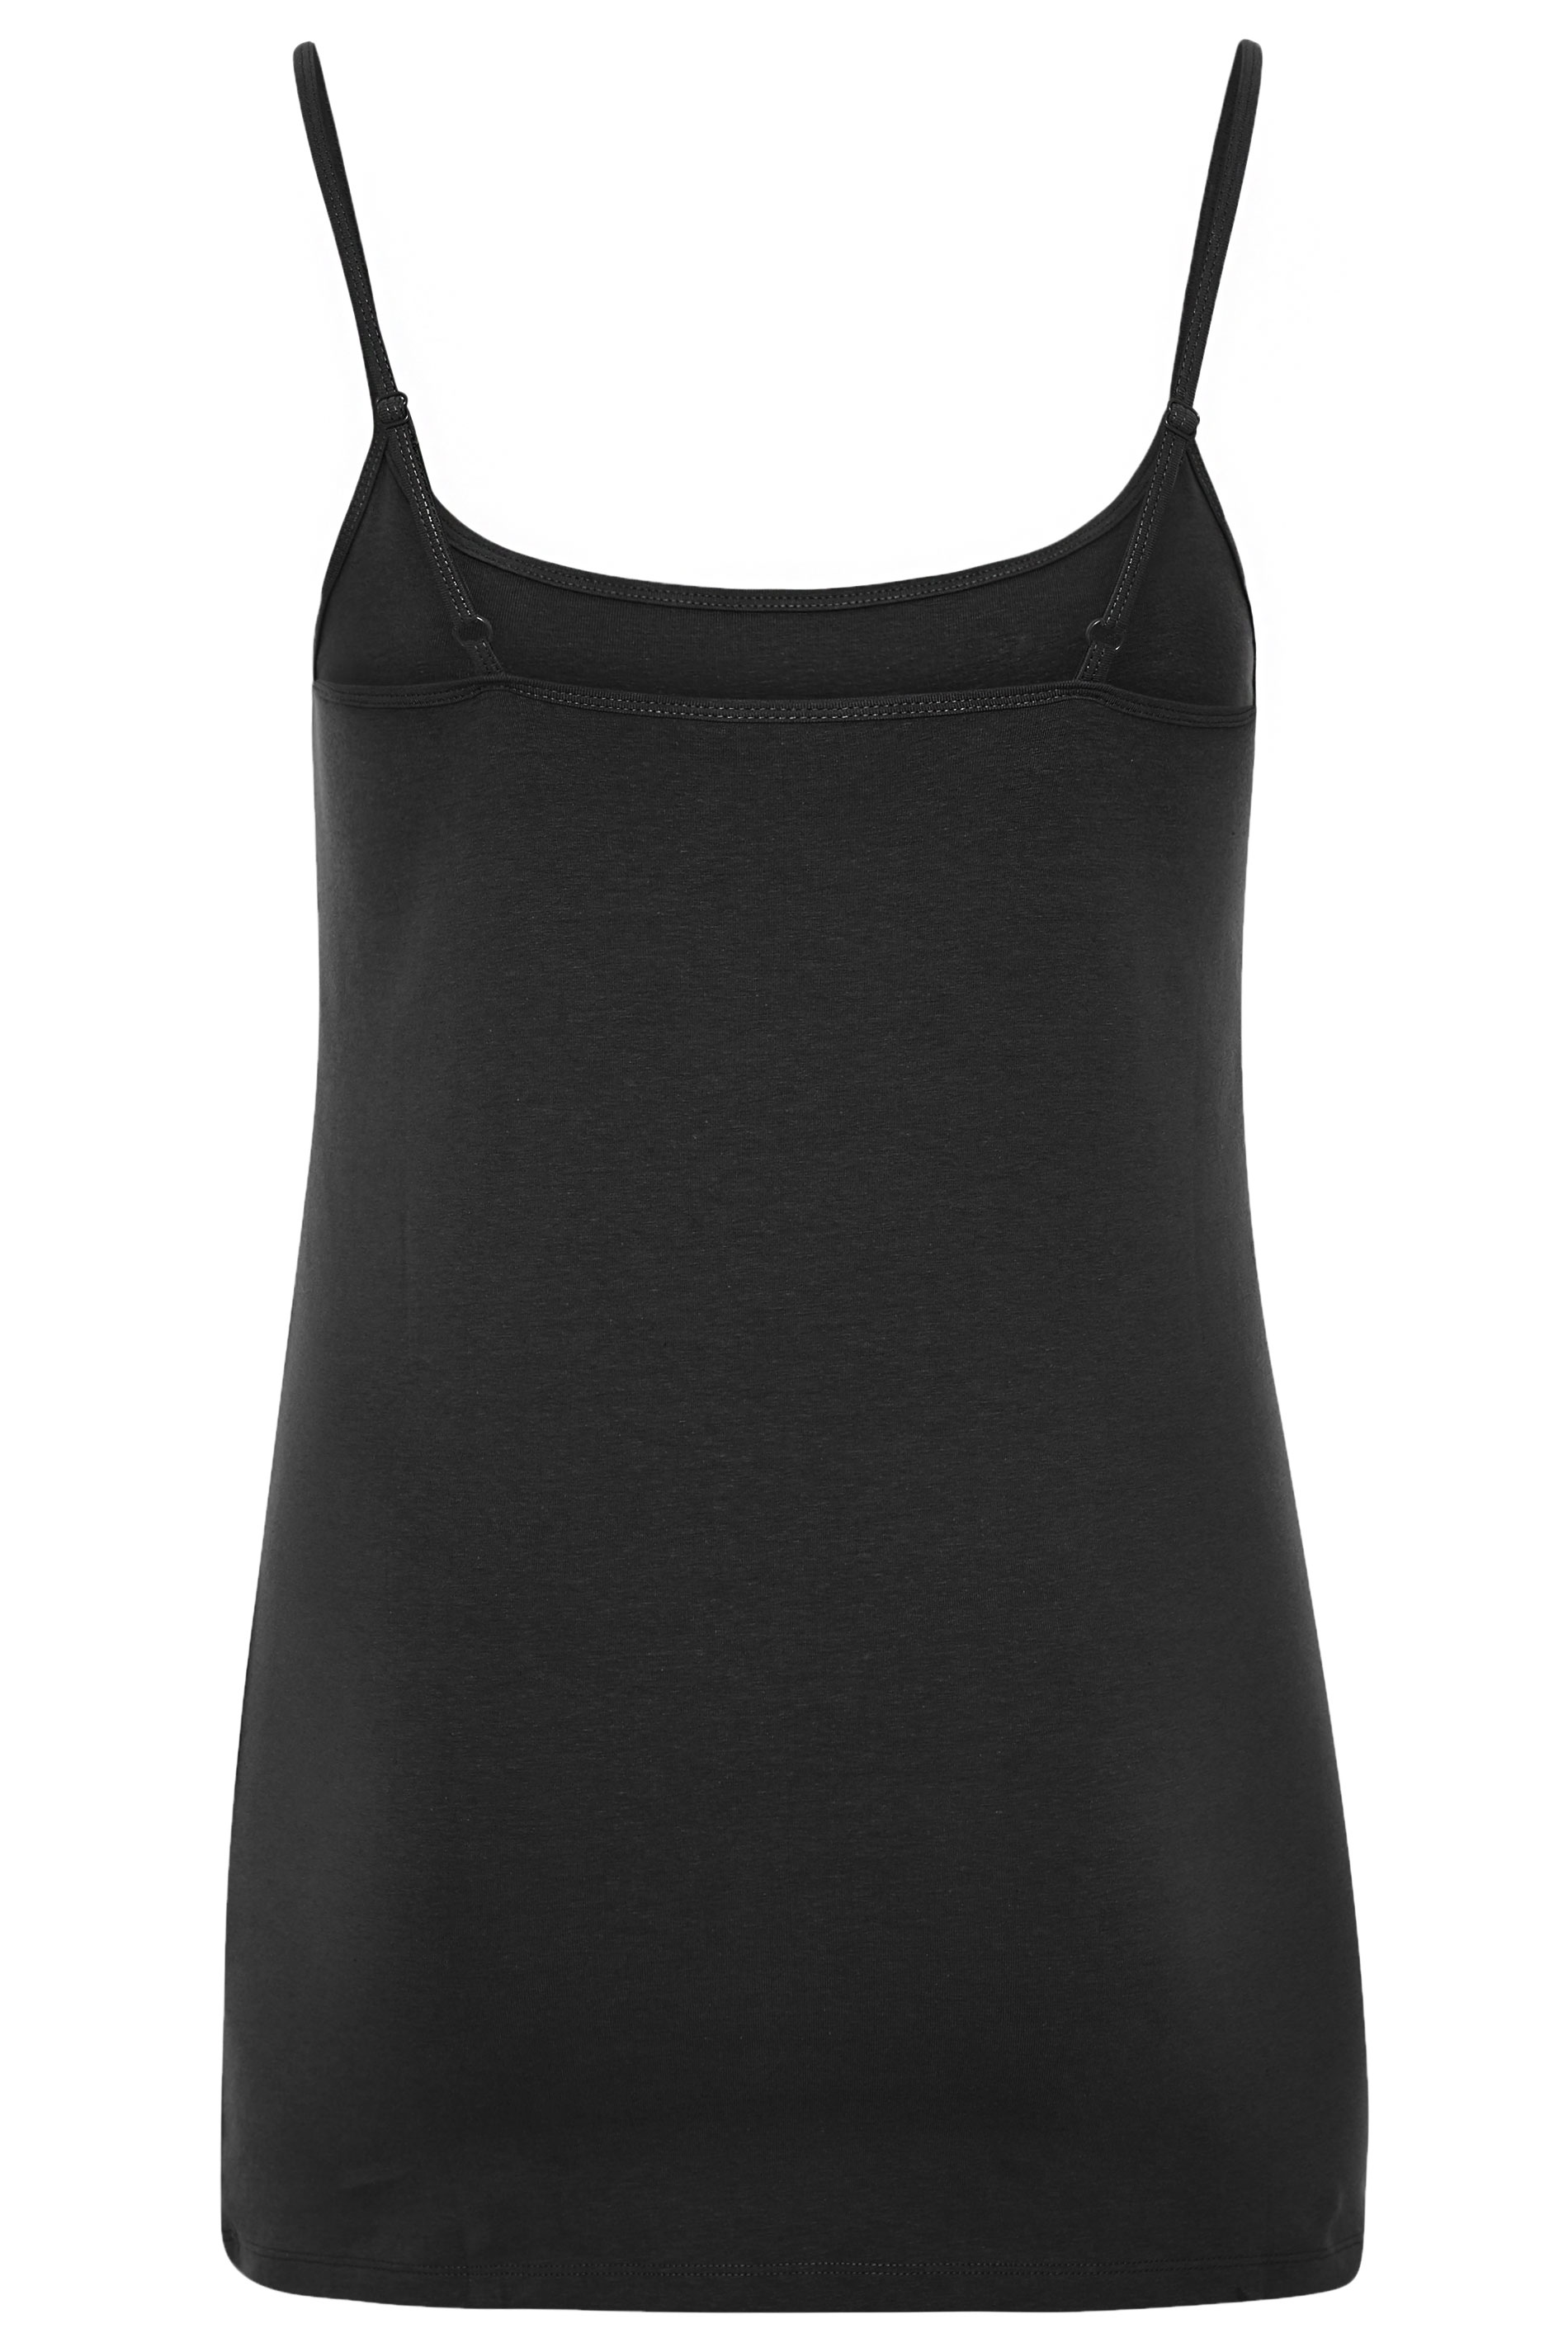 Plus Size Black Cami Vest Top | Yours Clothing